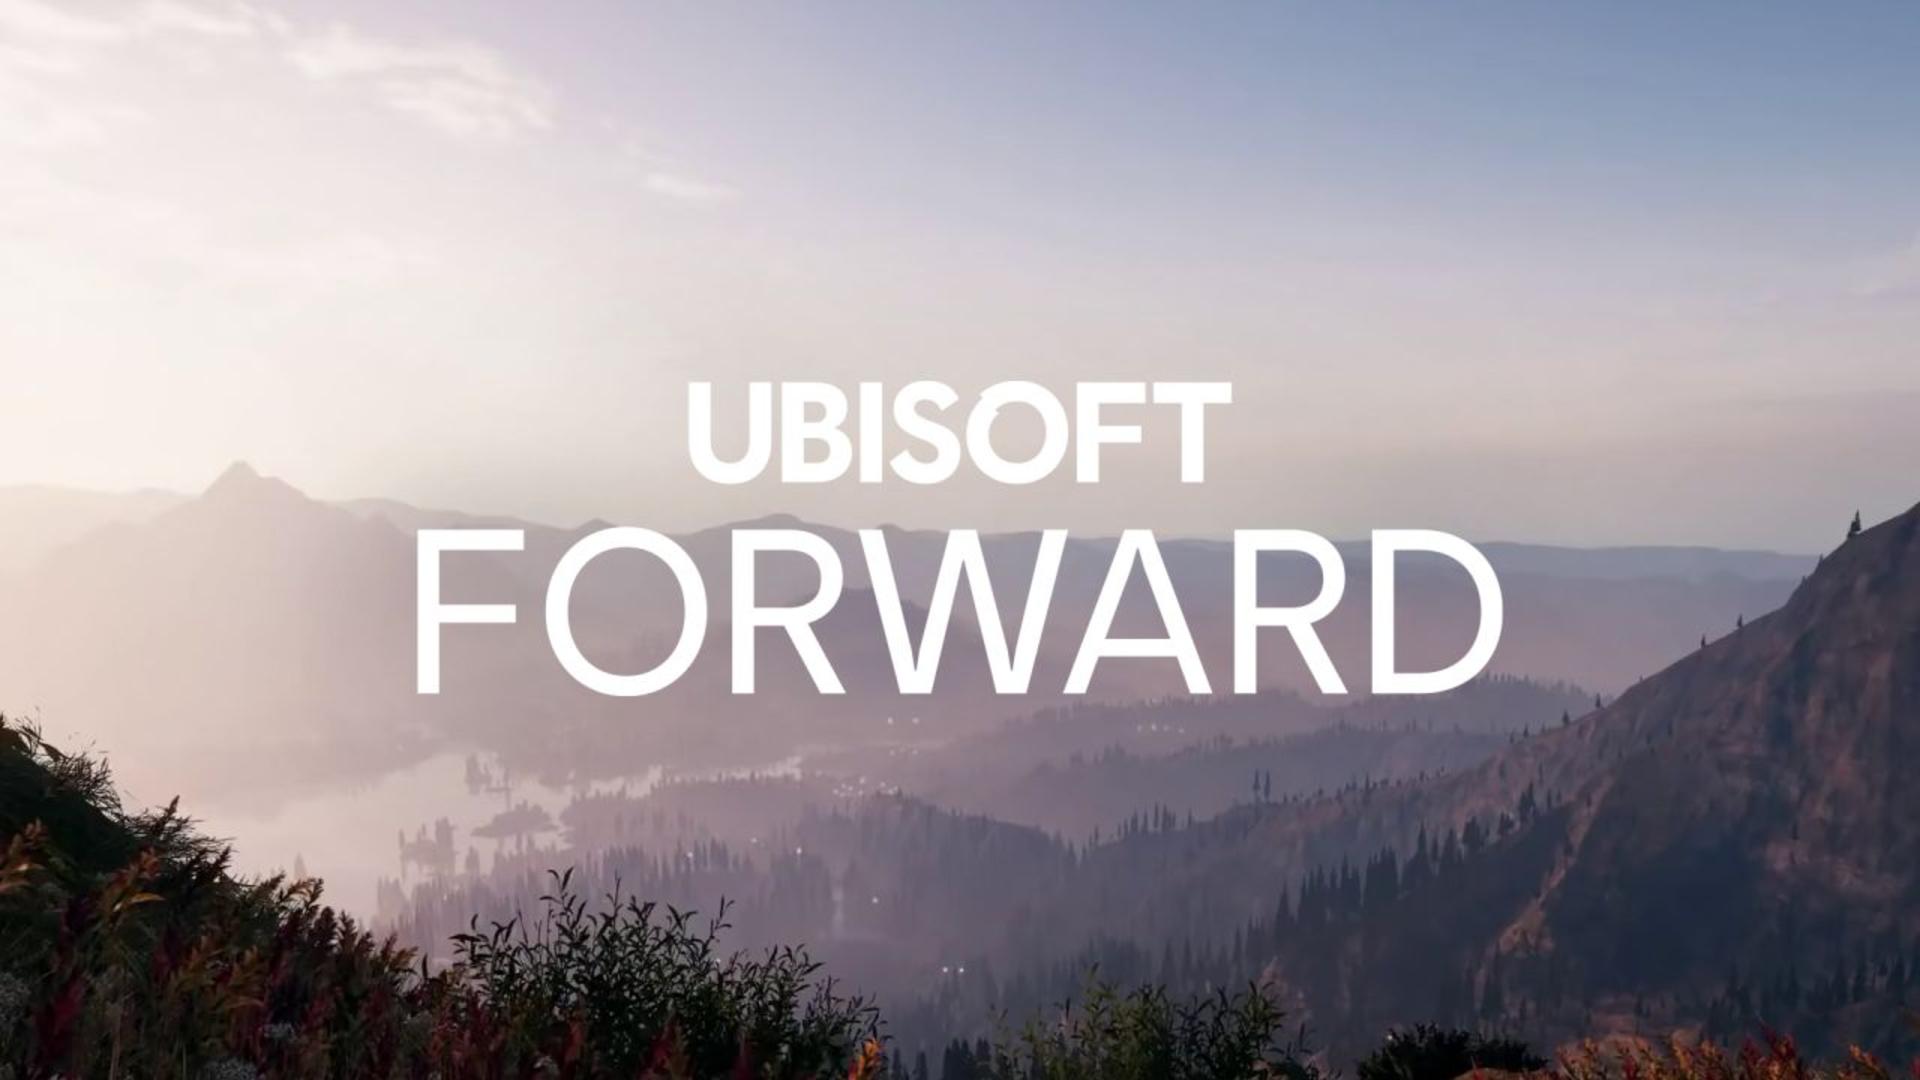 Ubisoft forward será o evento online em julho | f19f21a1 ubisoft forward | peppa pig | ubisoft forward peppa pig